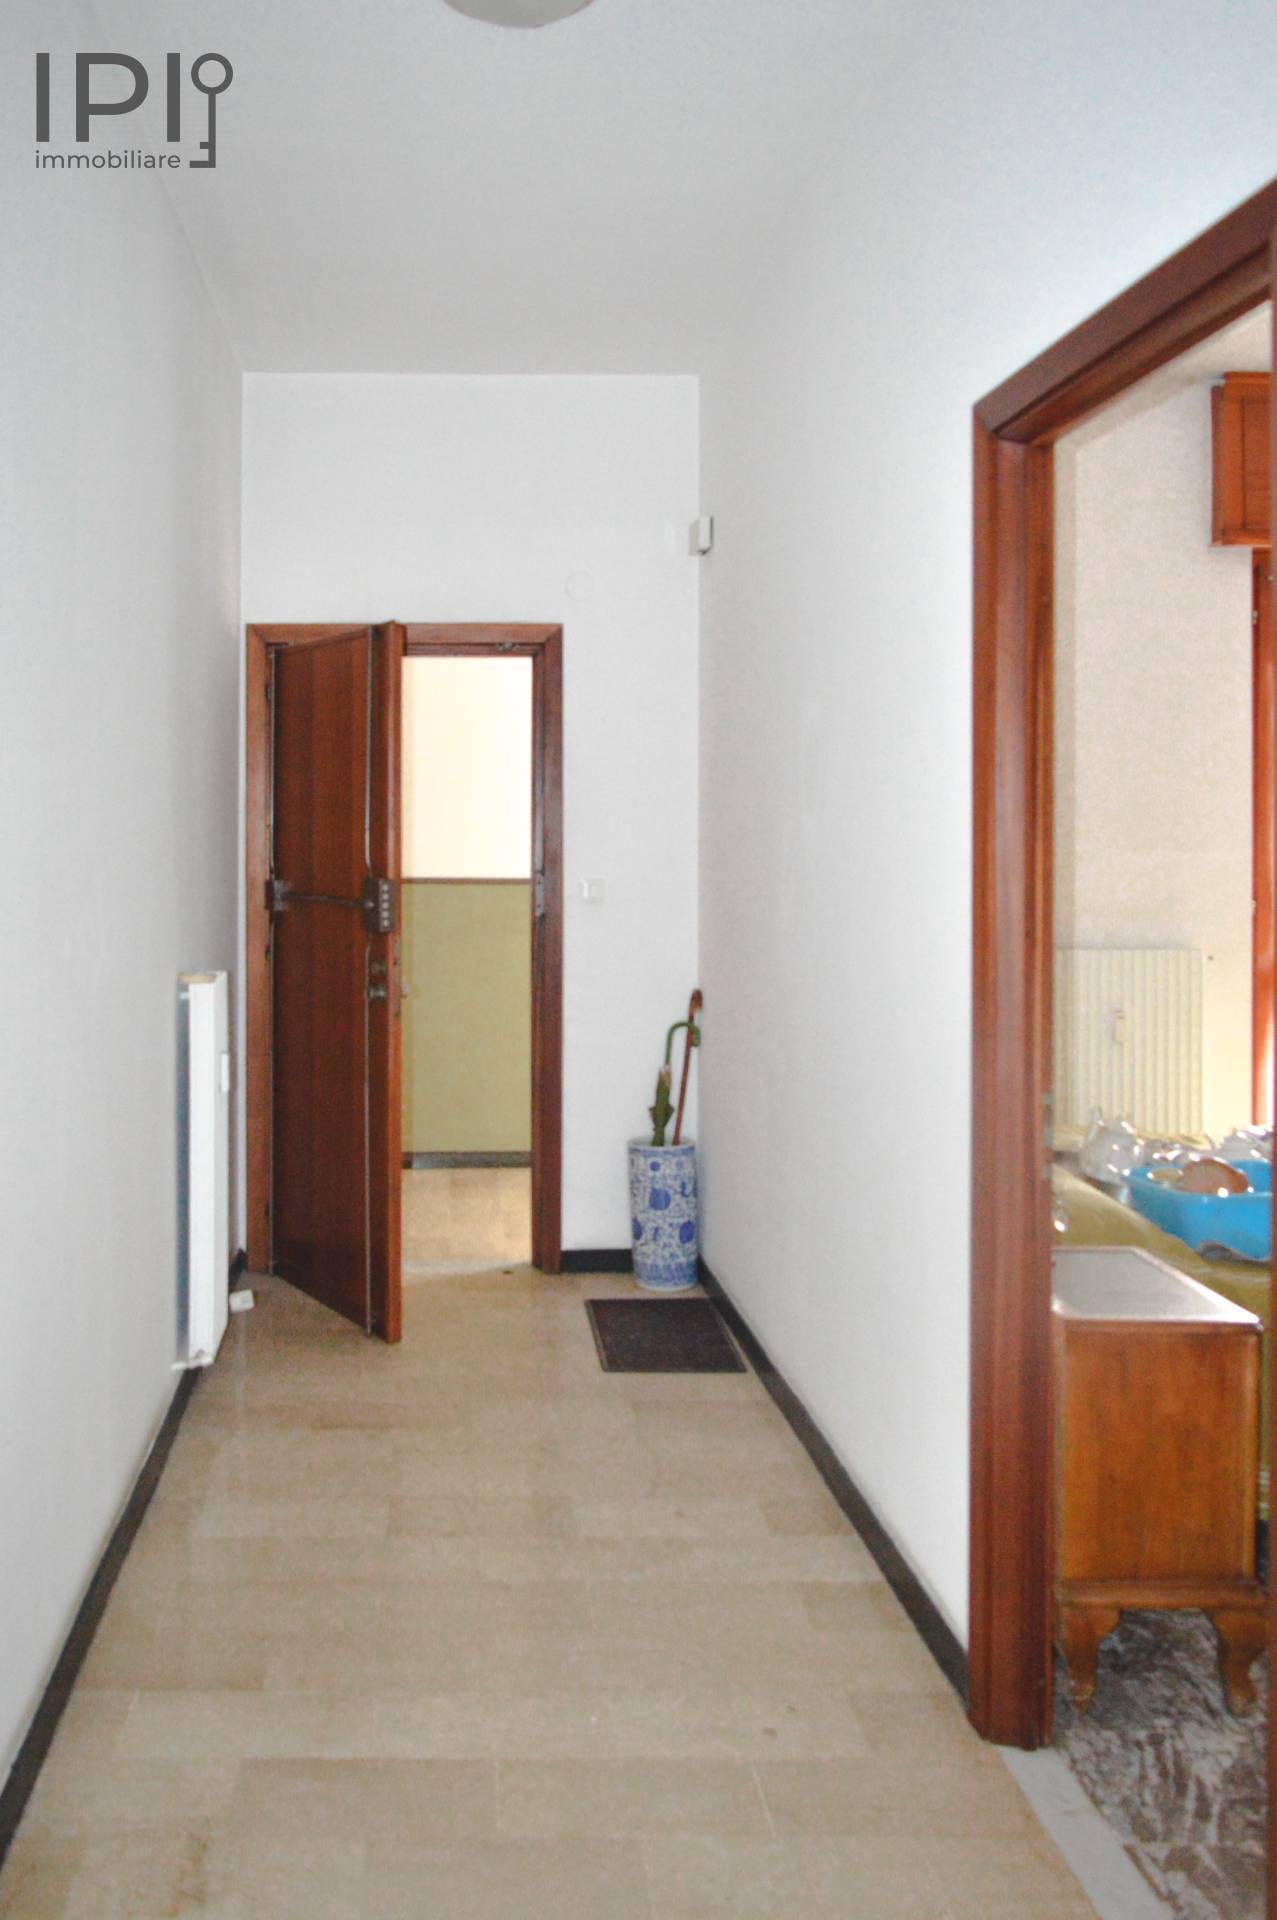 Appartamento in vendita a Carcare, 5 locali, prezzo € 85.000 | PortaleAgenzieImmobiliari.it